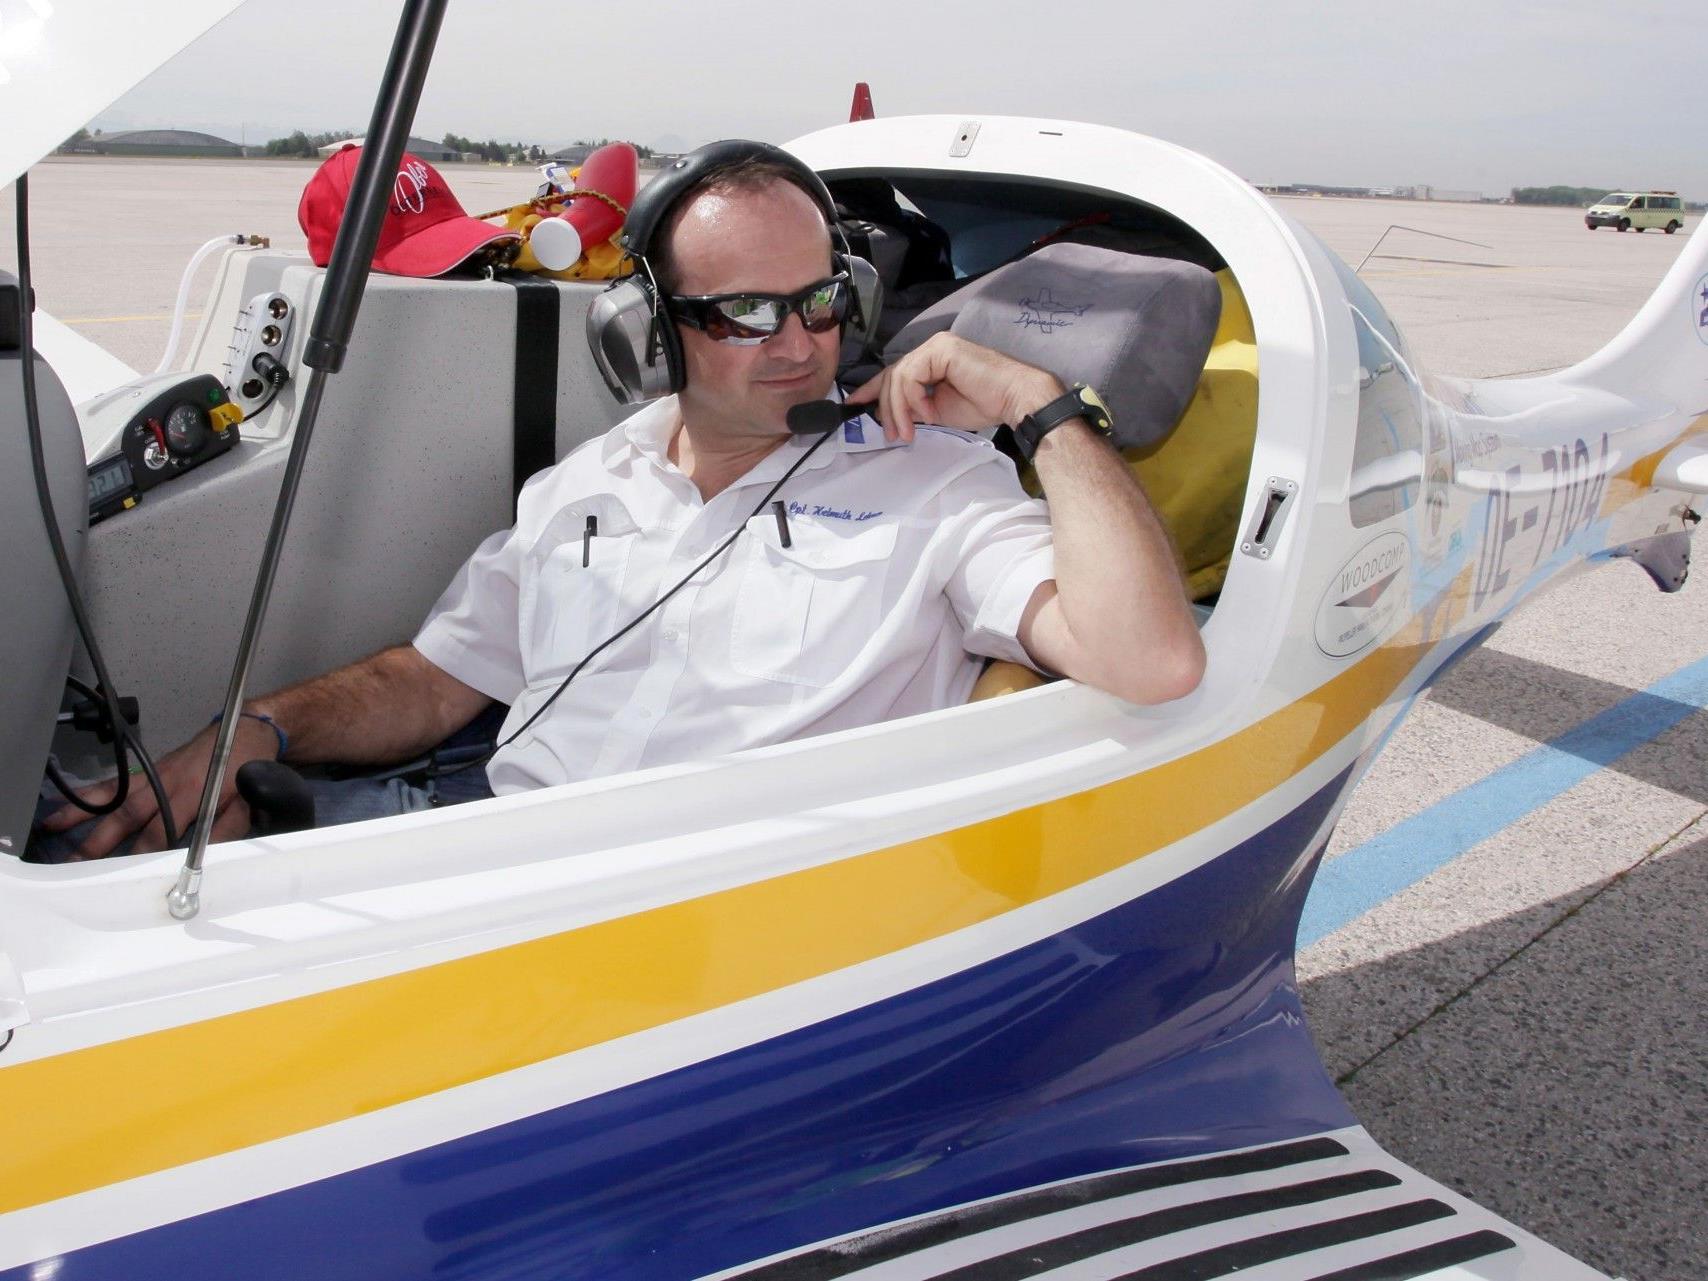 Der 44-jährige Freizeitpilot Helmuth Lehner aus Schörfling startete mit seinem einmotorigen Kleinflugzeug am 11. Mai 2012 zu einer Solo-Weltumrundung vom Linzer Blue Danube Airport in Hörsching. Am 11. August ist er wieder sicher in seiner Heimat gelandet.